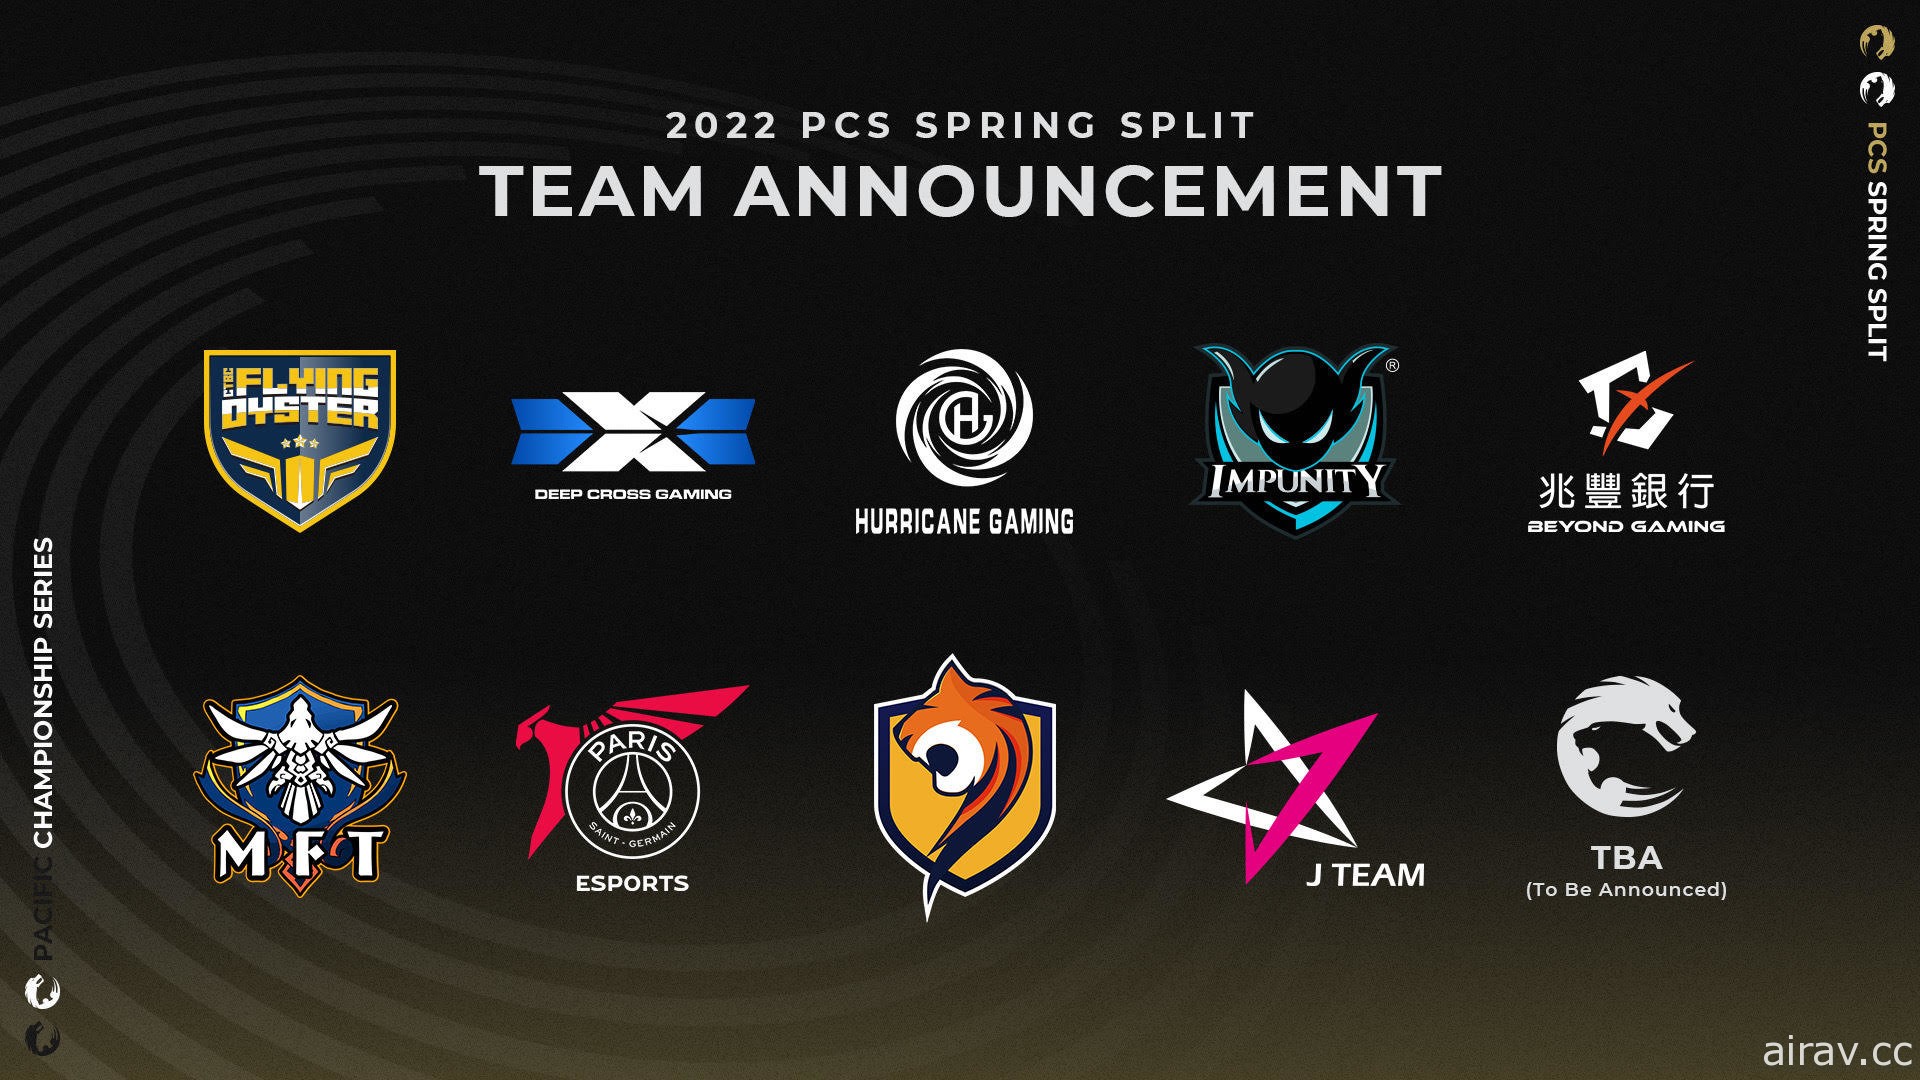 2022《英雄聯盟》PCS 聯賽 2 月 11 日開打 10 支隊伍中有 6 支是新隊伍